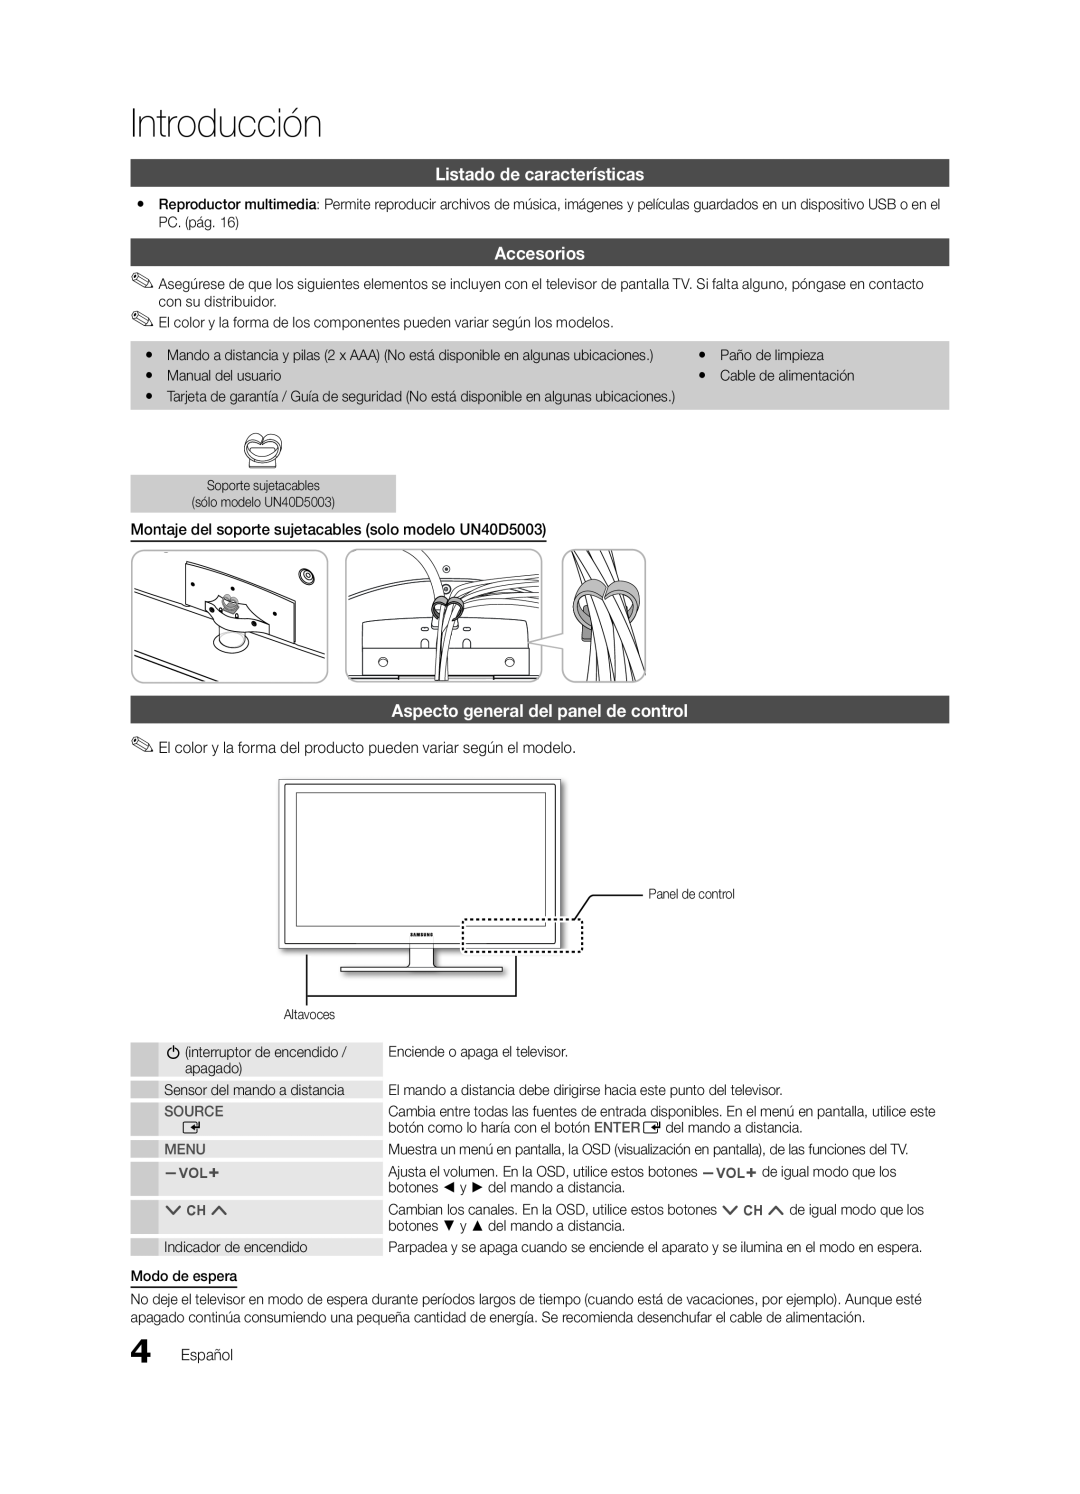 Samsung UN22D5003 Introducción, Listado de características, Accesorios, Aspecto general del panel de control, sOURCE, MEnU 